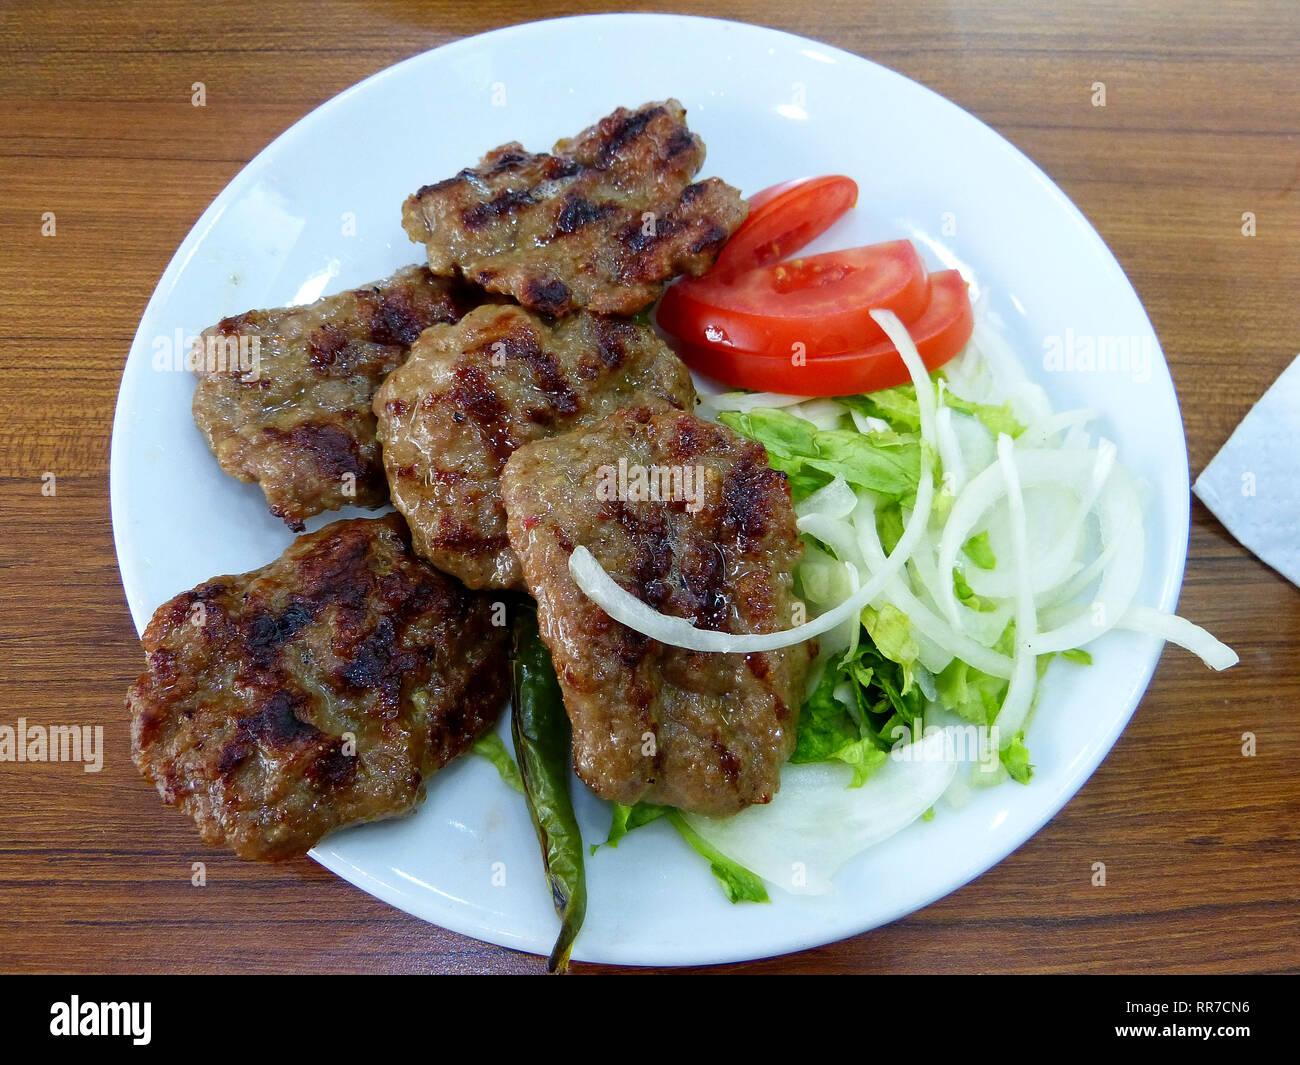 Turkish kofte meatballs with salad. Stock Photo